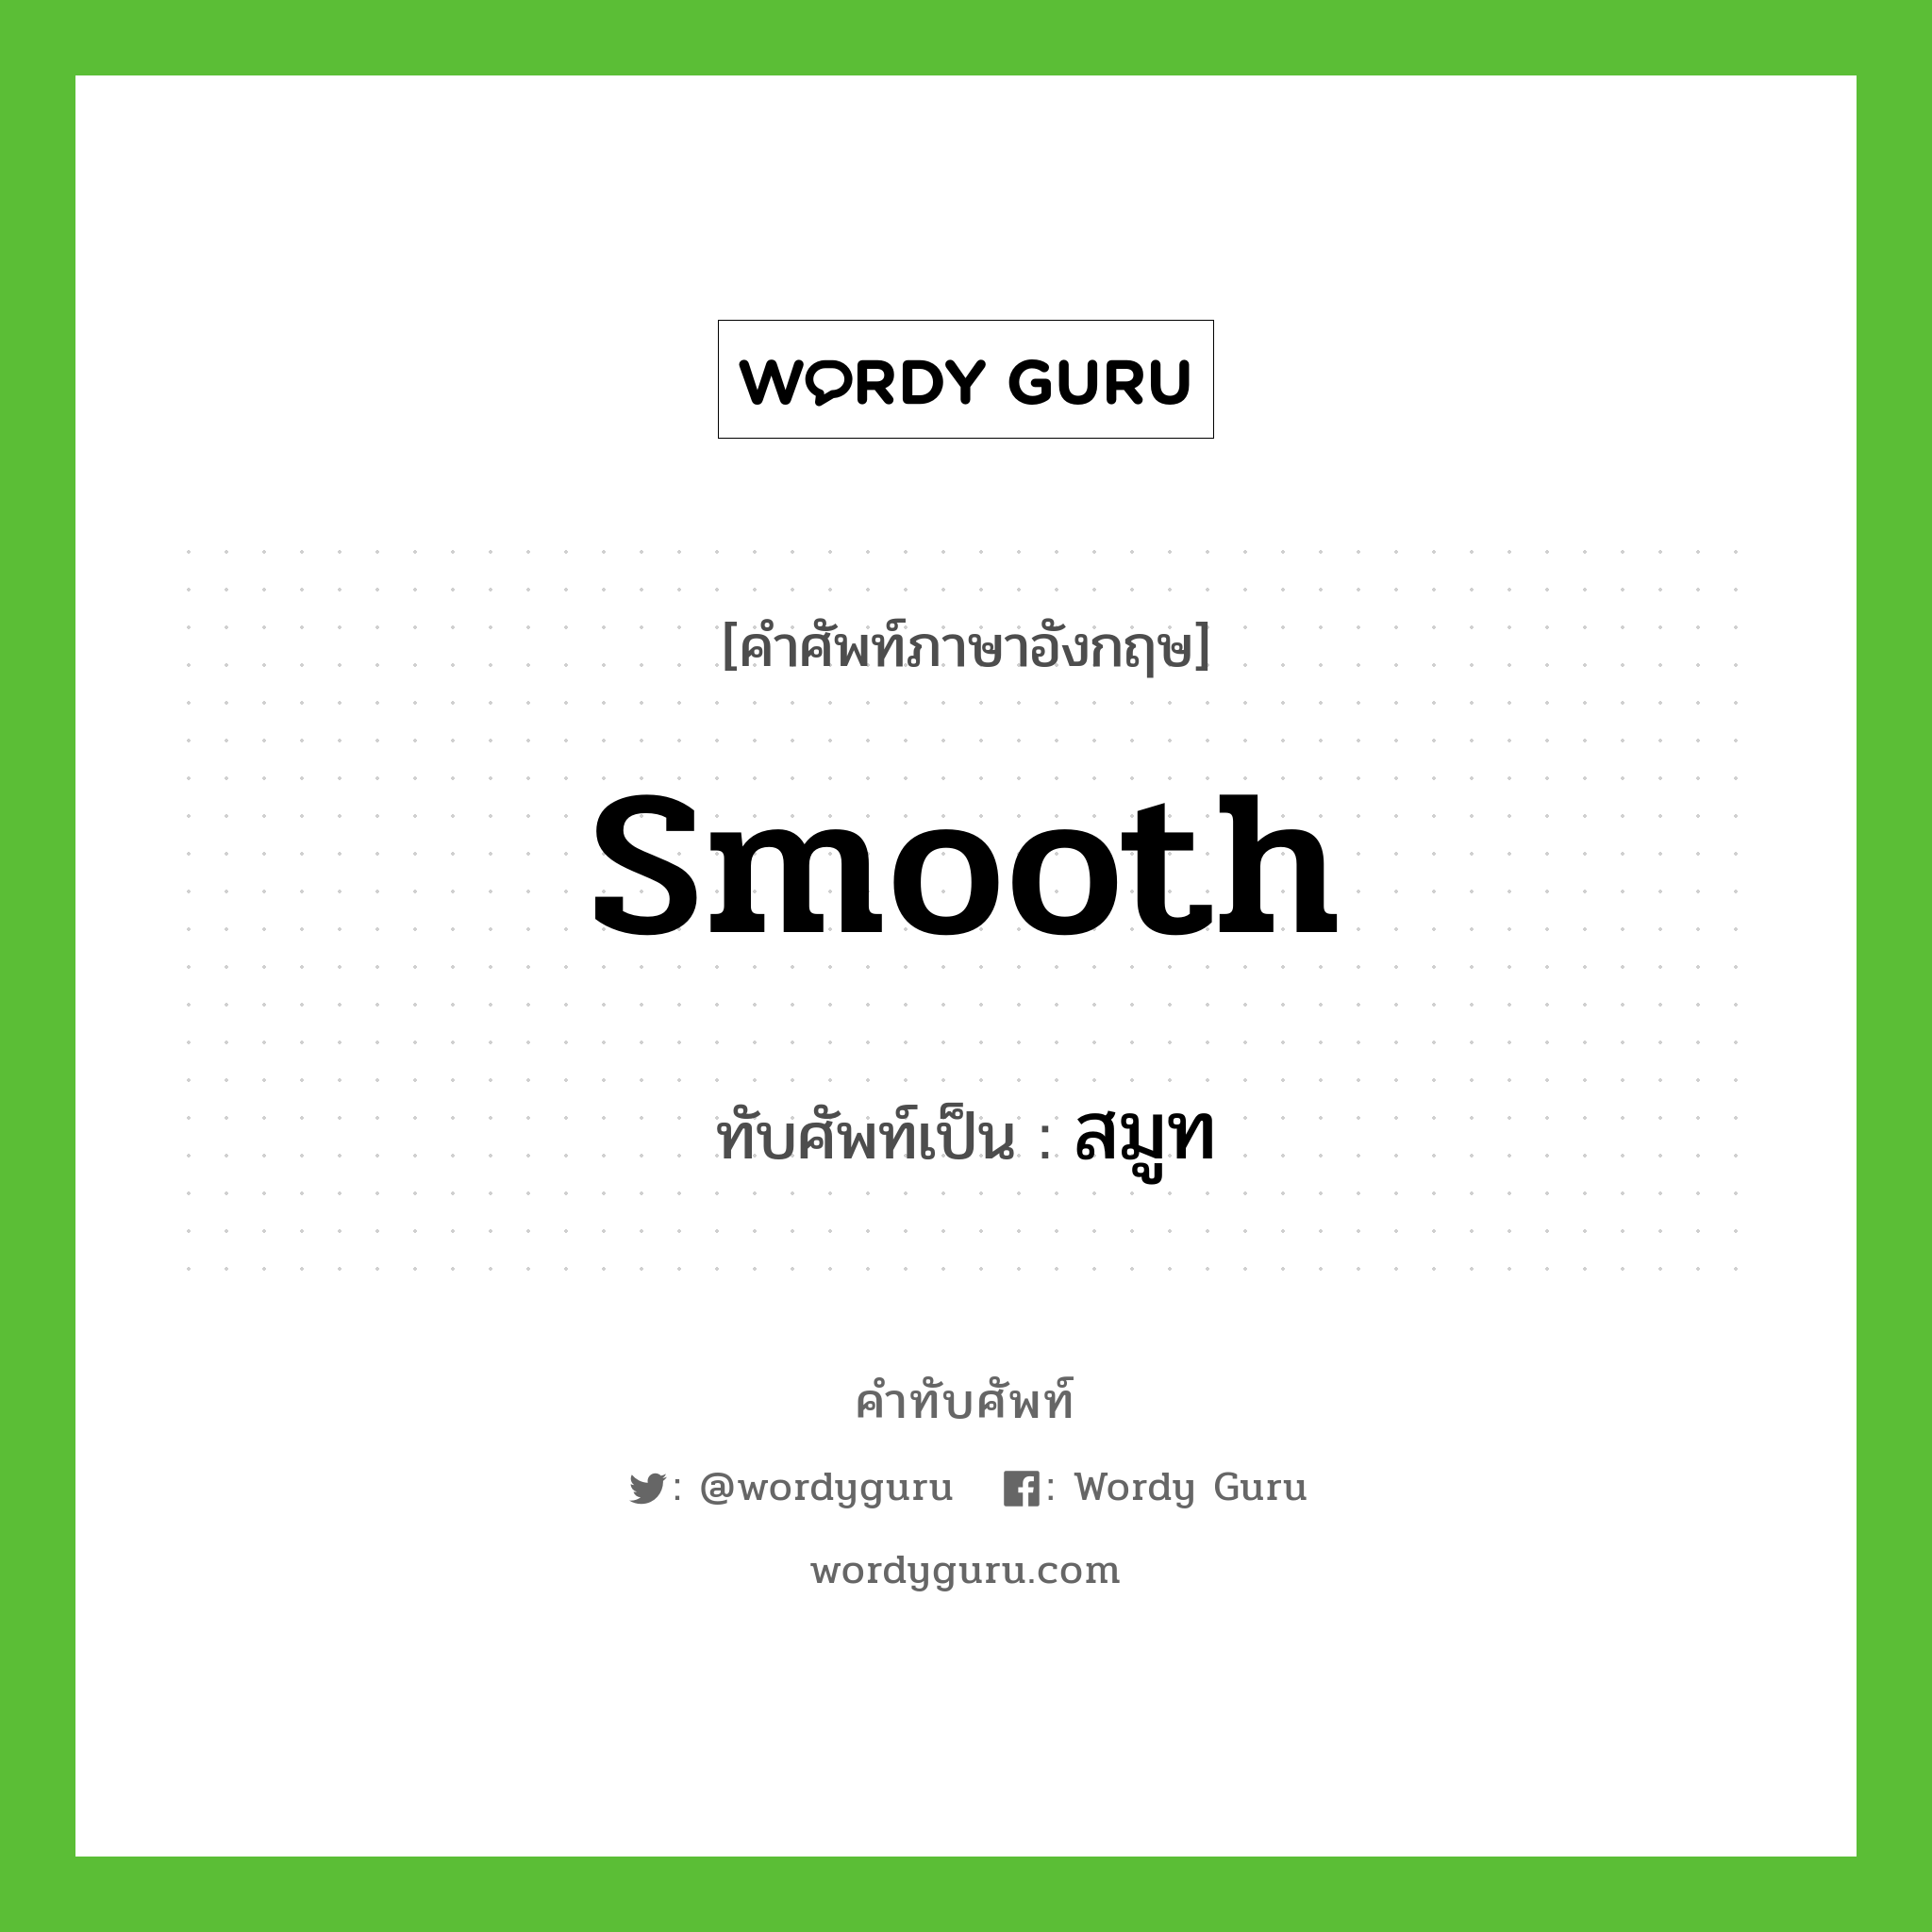 smooth เขียนเป็นคำไทยว่าอะไร?, คำศัพท์ภาษาอังกฤษ smooth ทับศัพท์เป็น สมูท